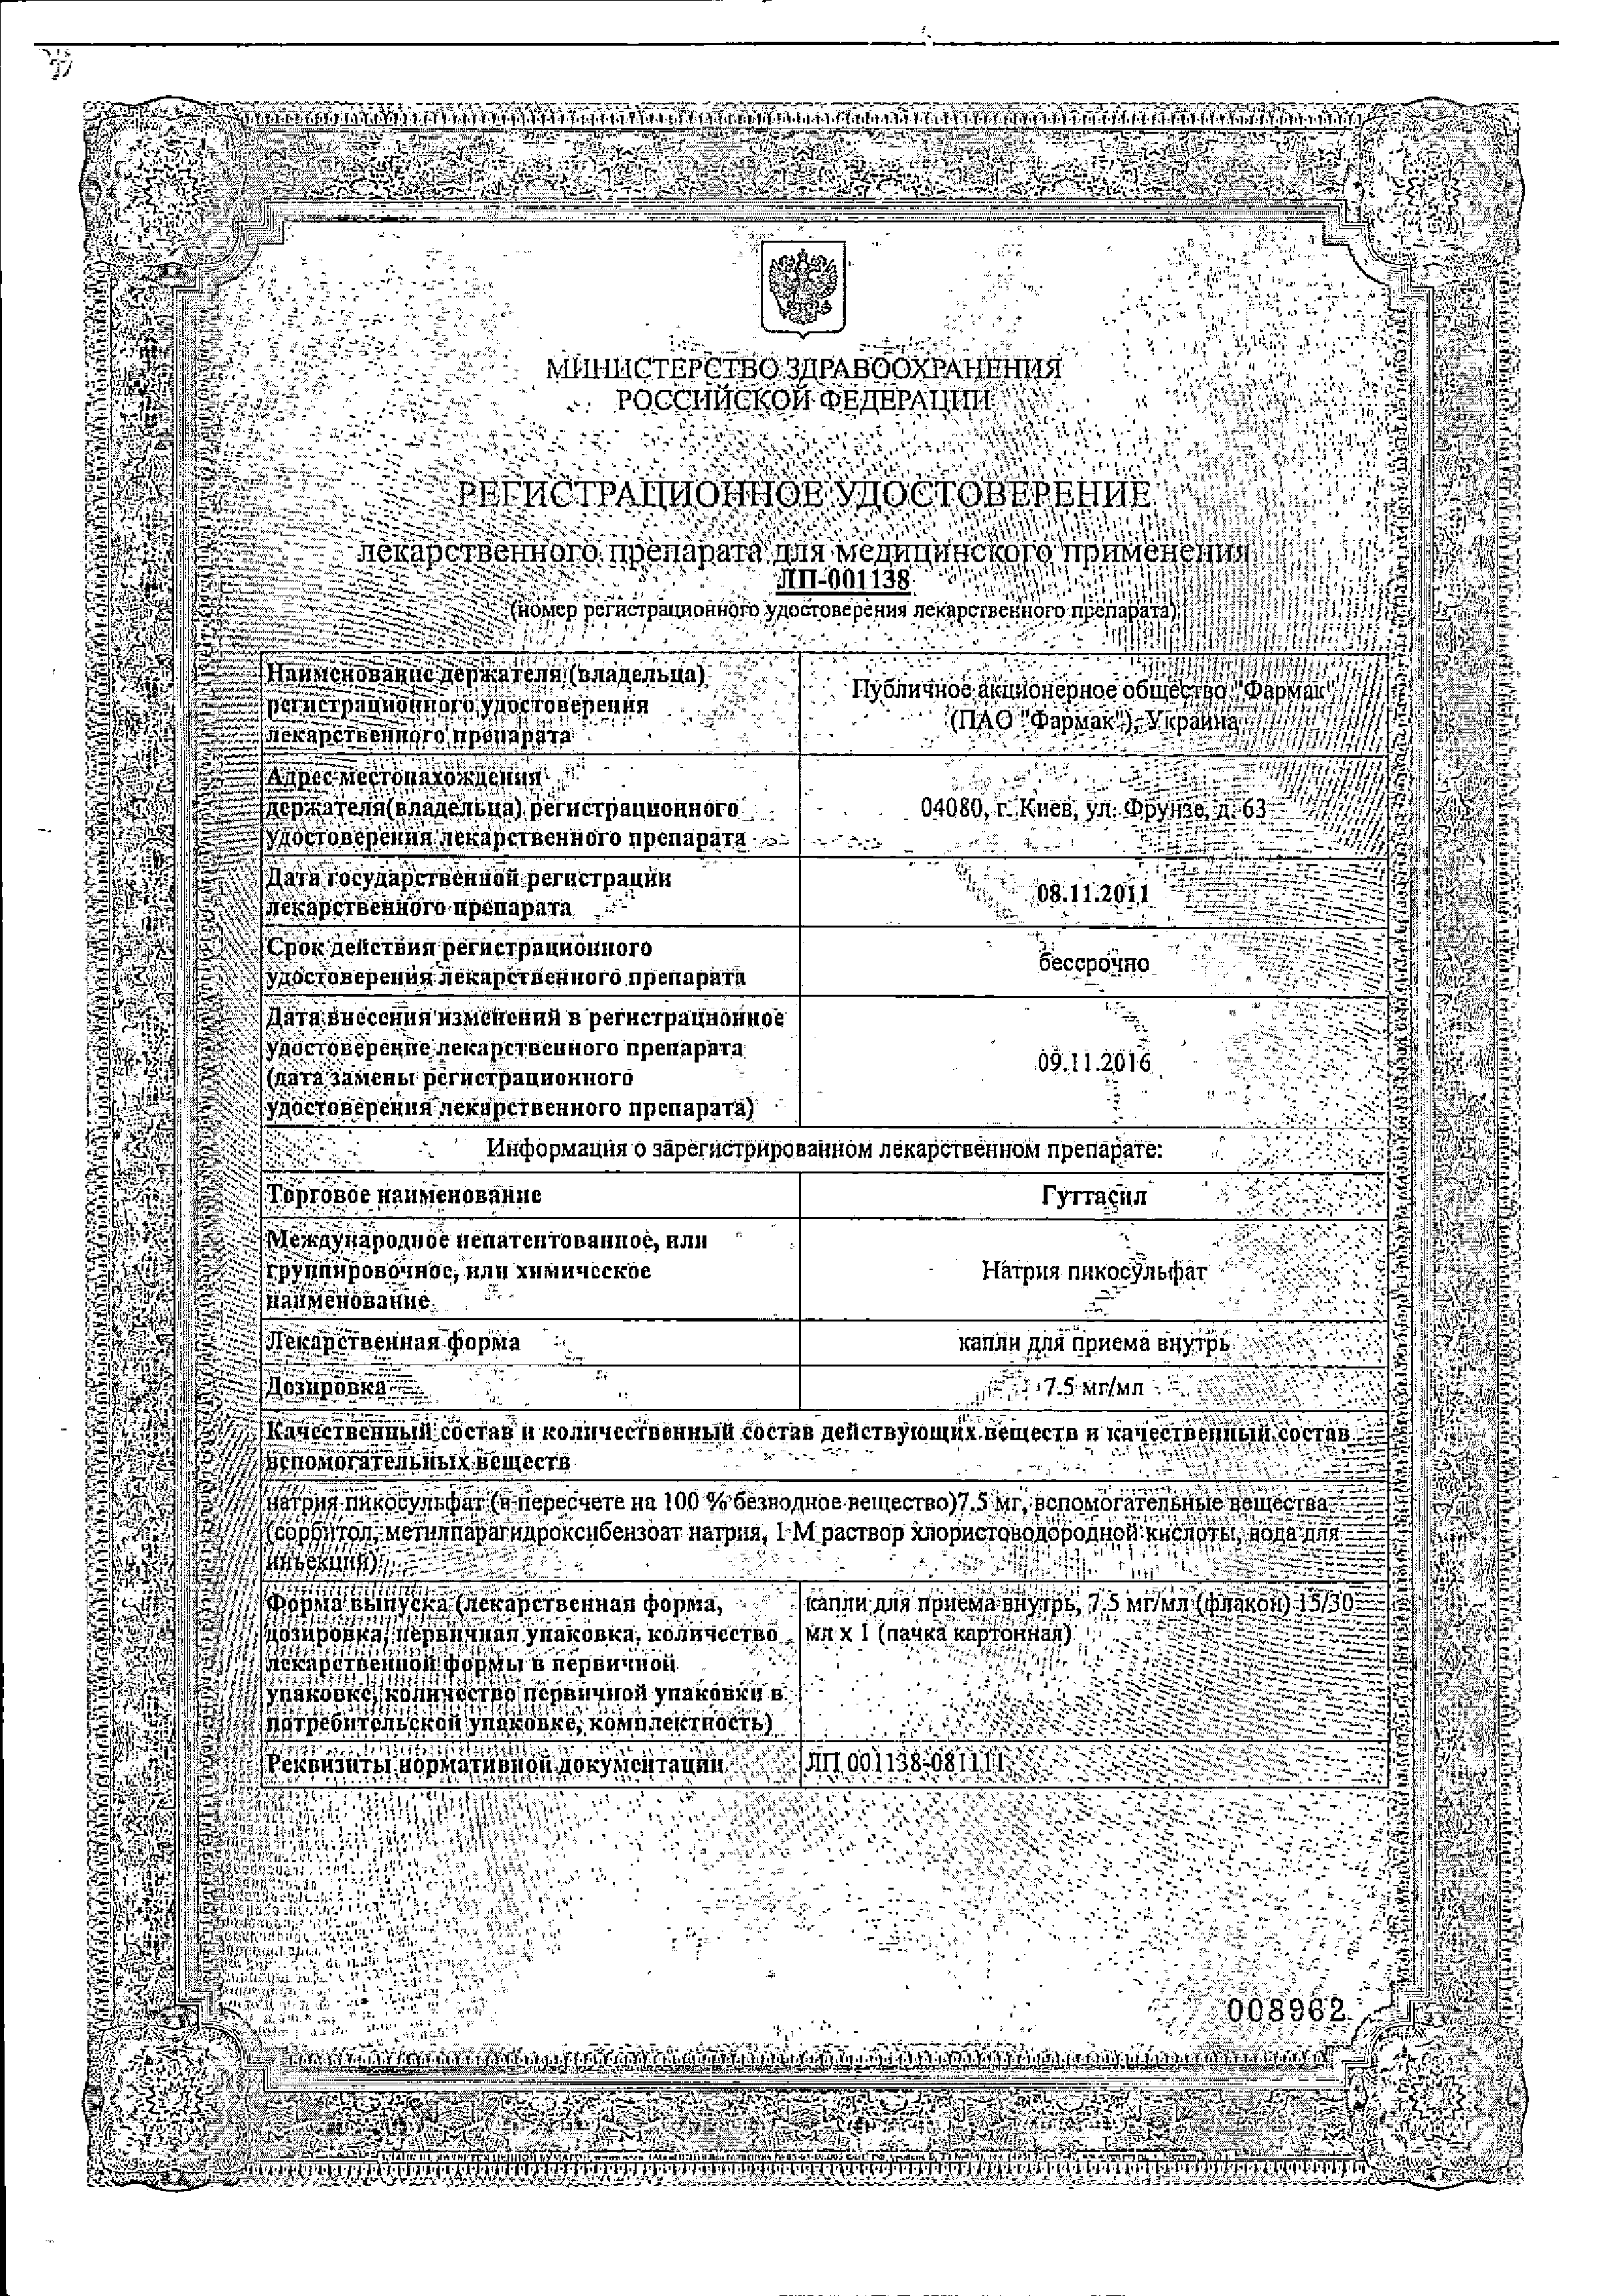 Гуттасил сертификат